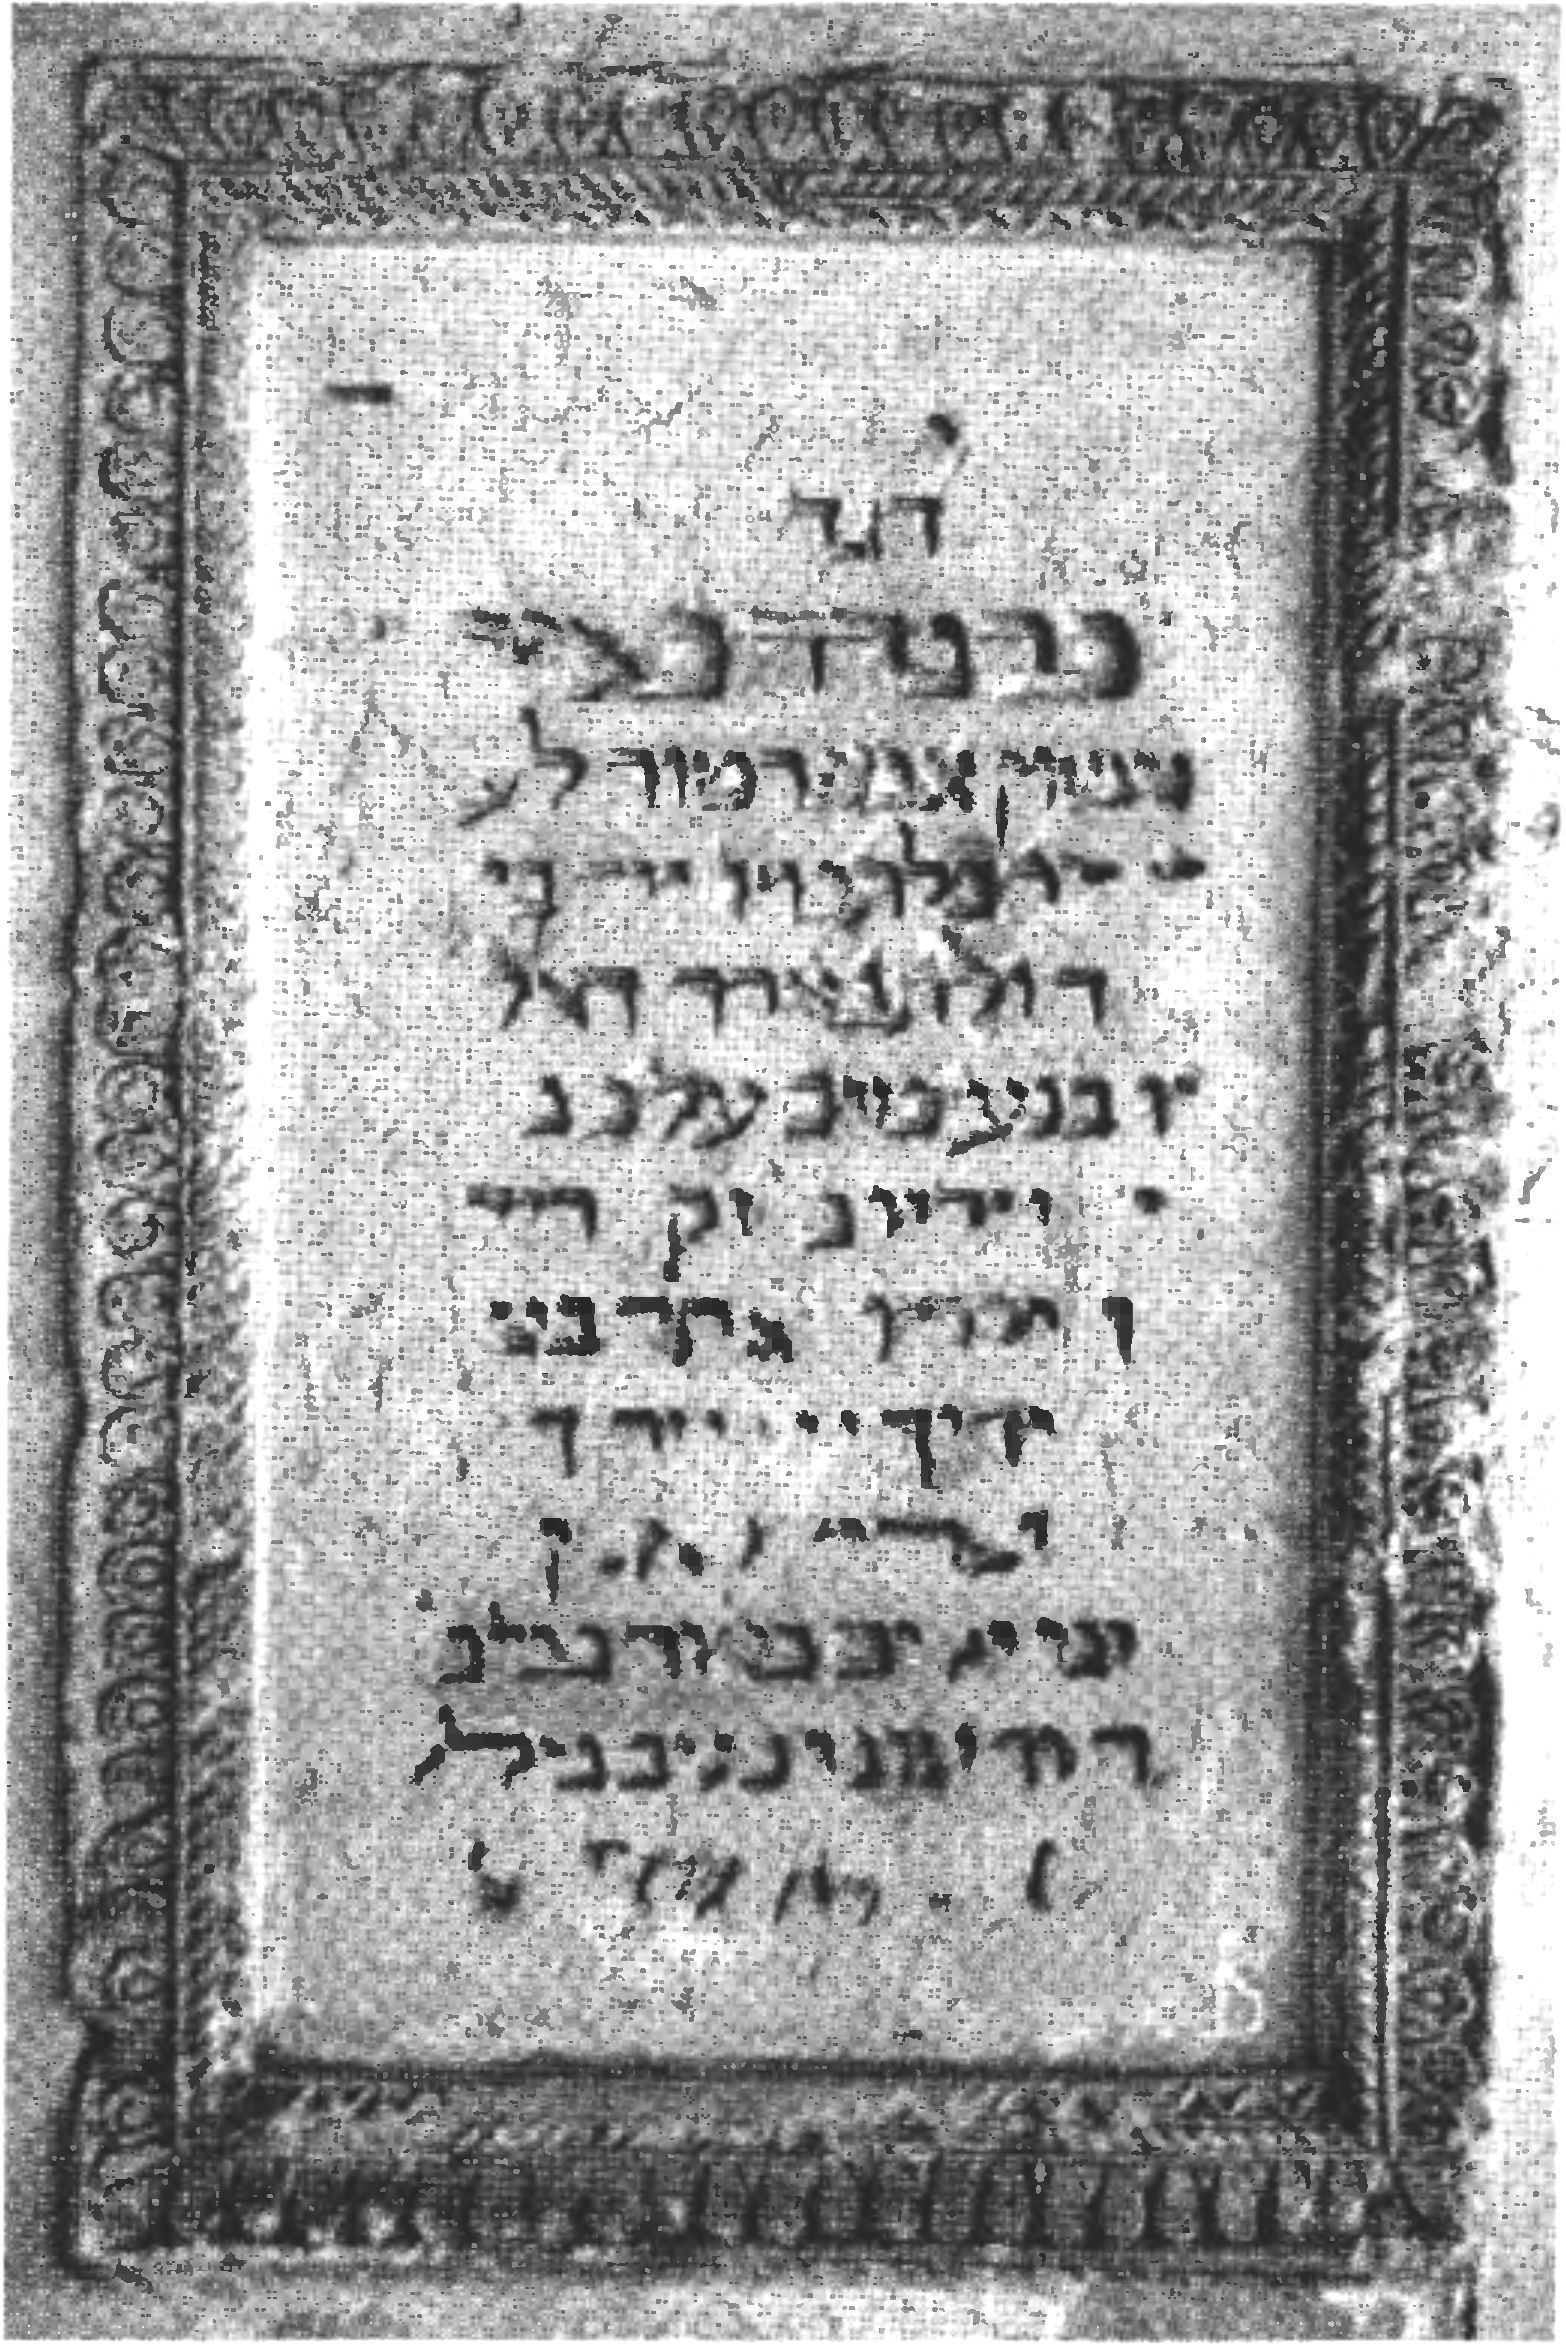 Полустертая надпись с текстом на иврите в честь посещения Чуфут-Кале императором Александром I у входа в Малую кенассу города